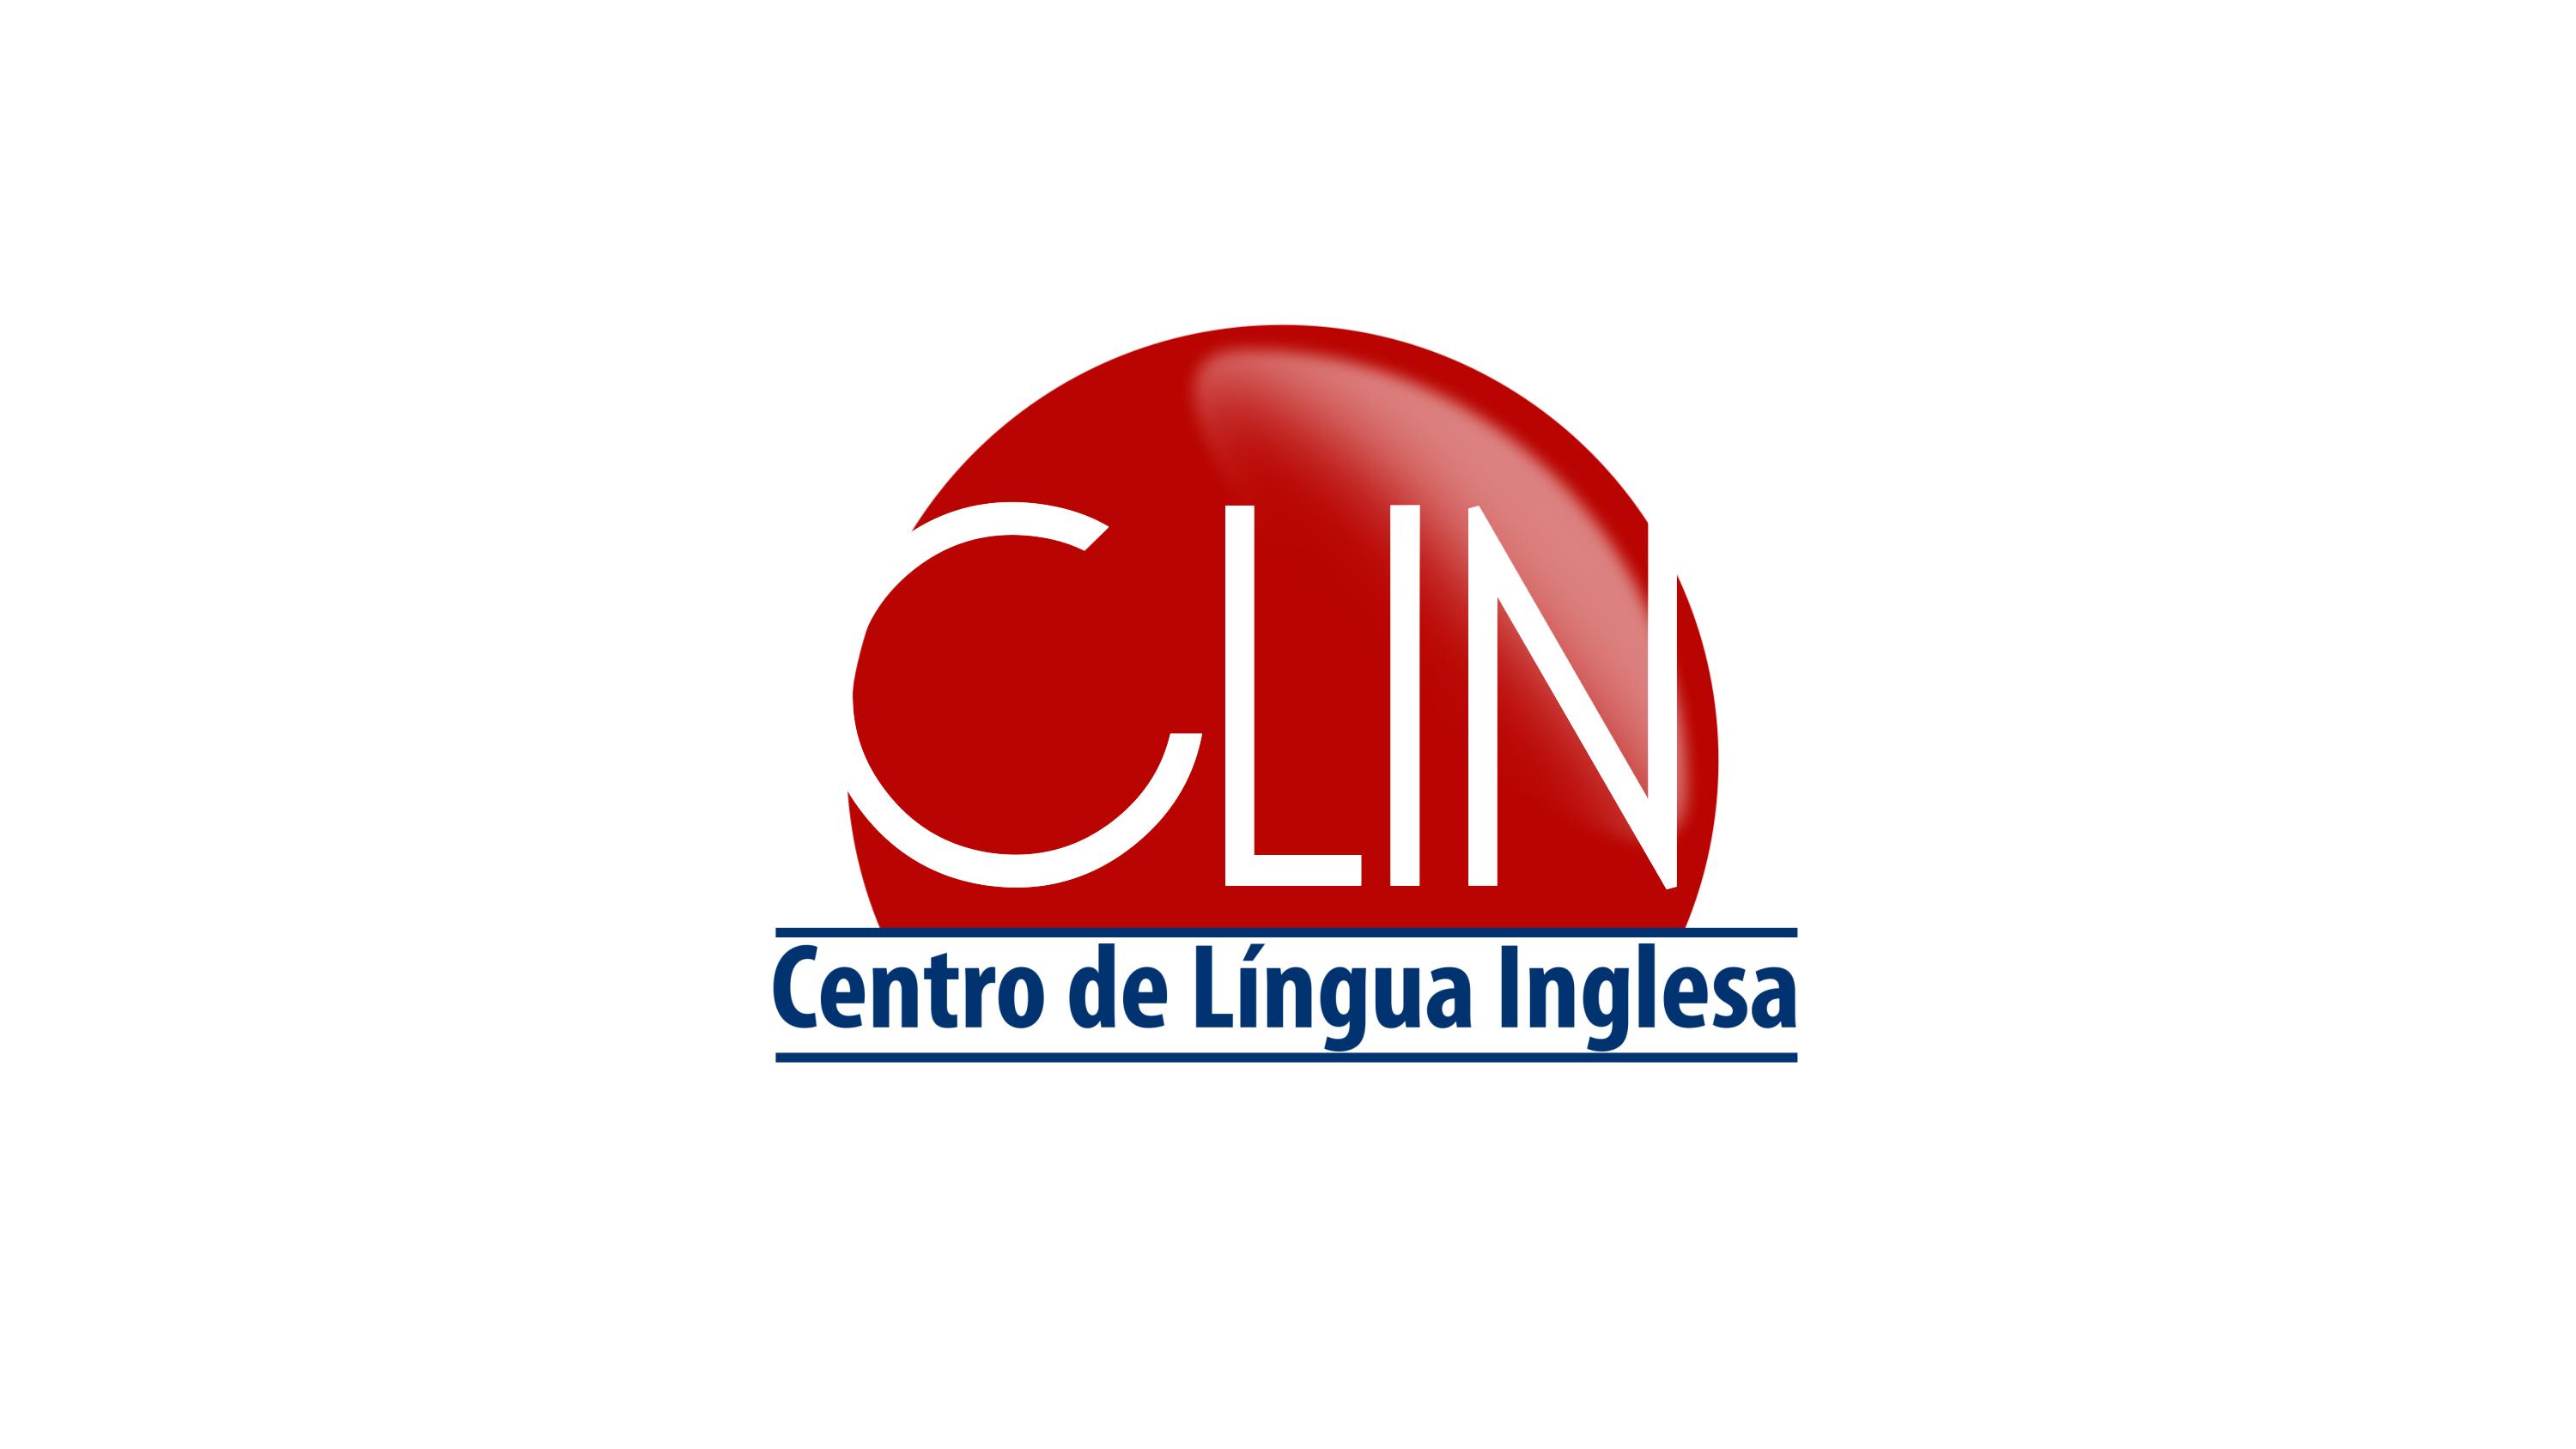 CLIN - Centro de Língua Inglesa